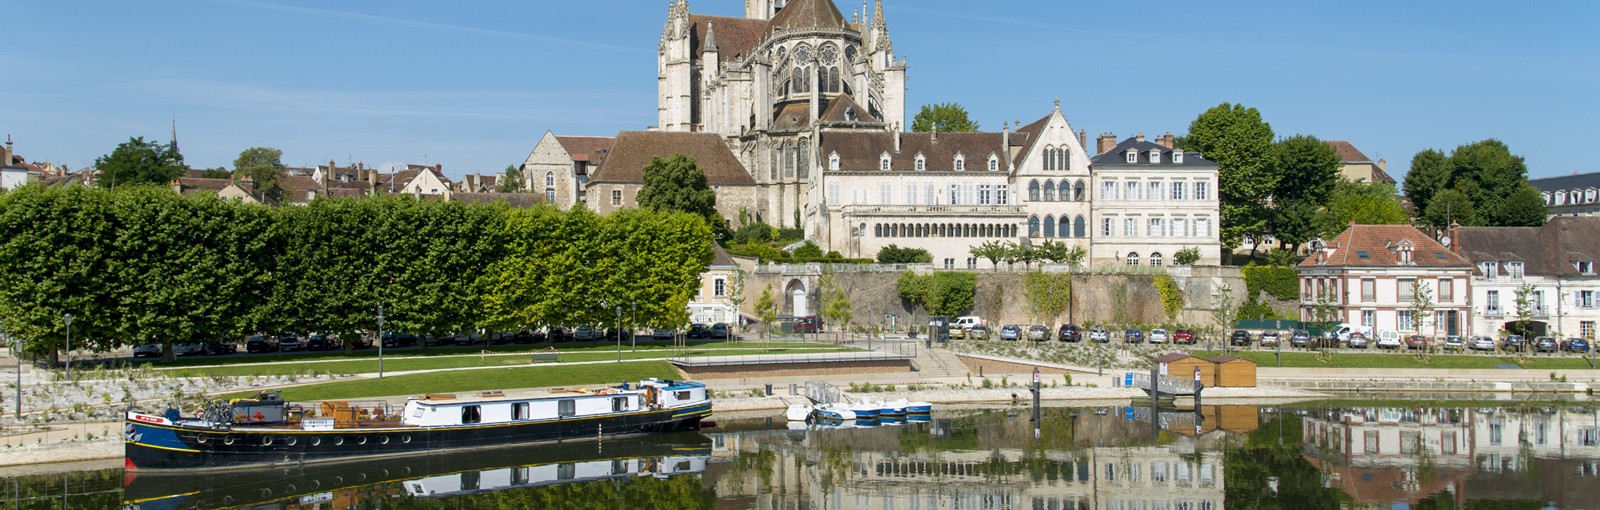 Tours Grand tour de l'Yonne - Journées complètes - Excursions au départ de Paris